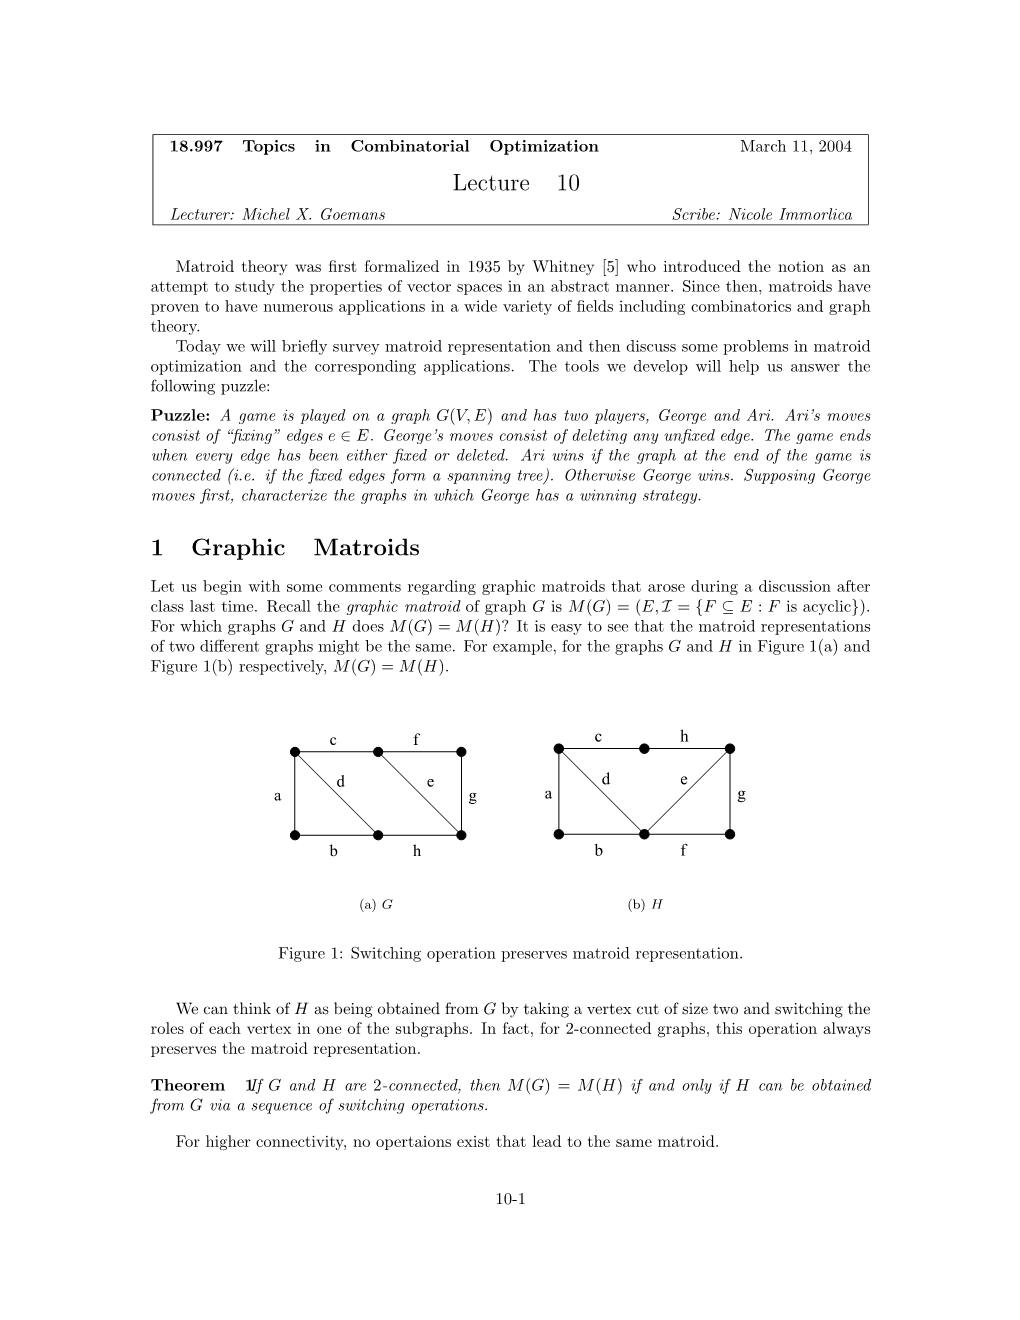 1 Lecture 10 Graphic Matroids